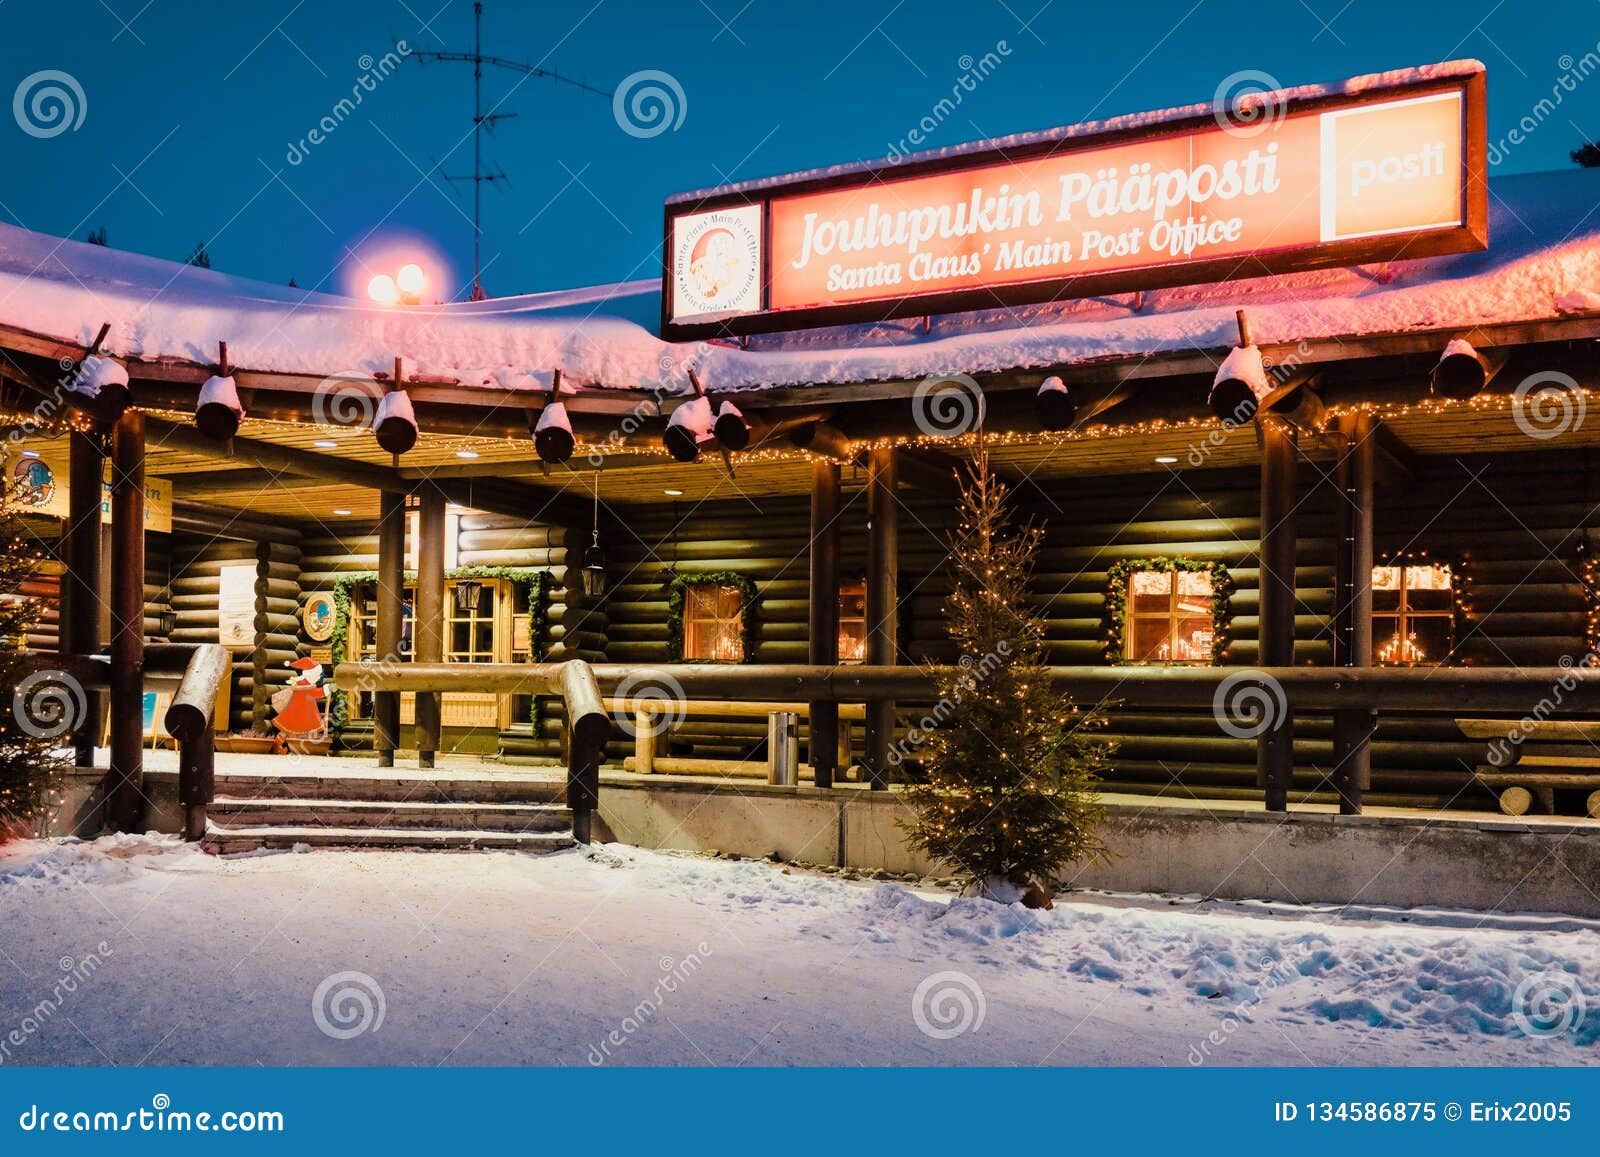 Santa Claus Post Office Santa Village at Night Stock Image - Image of claus,  main: 134586875